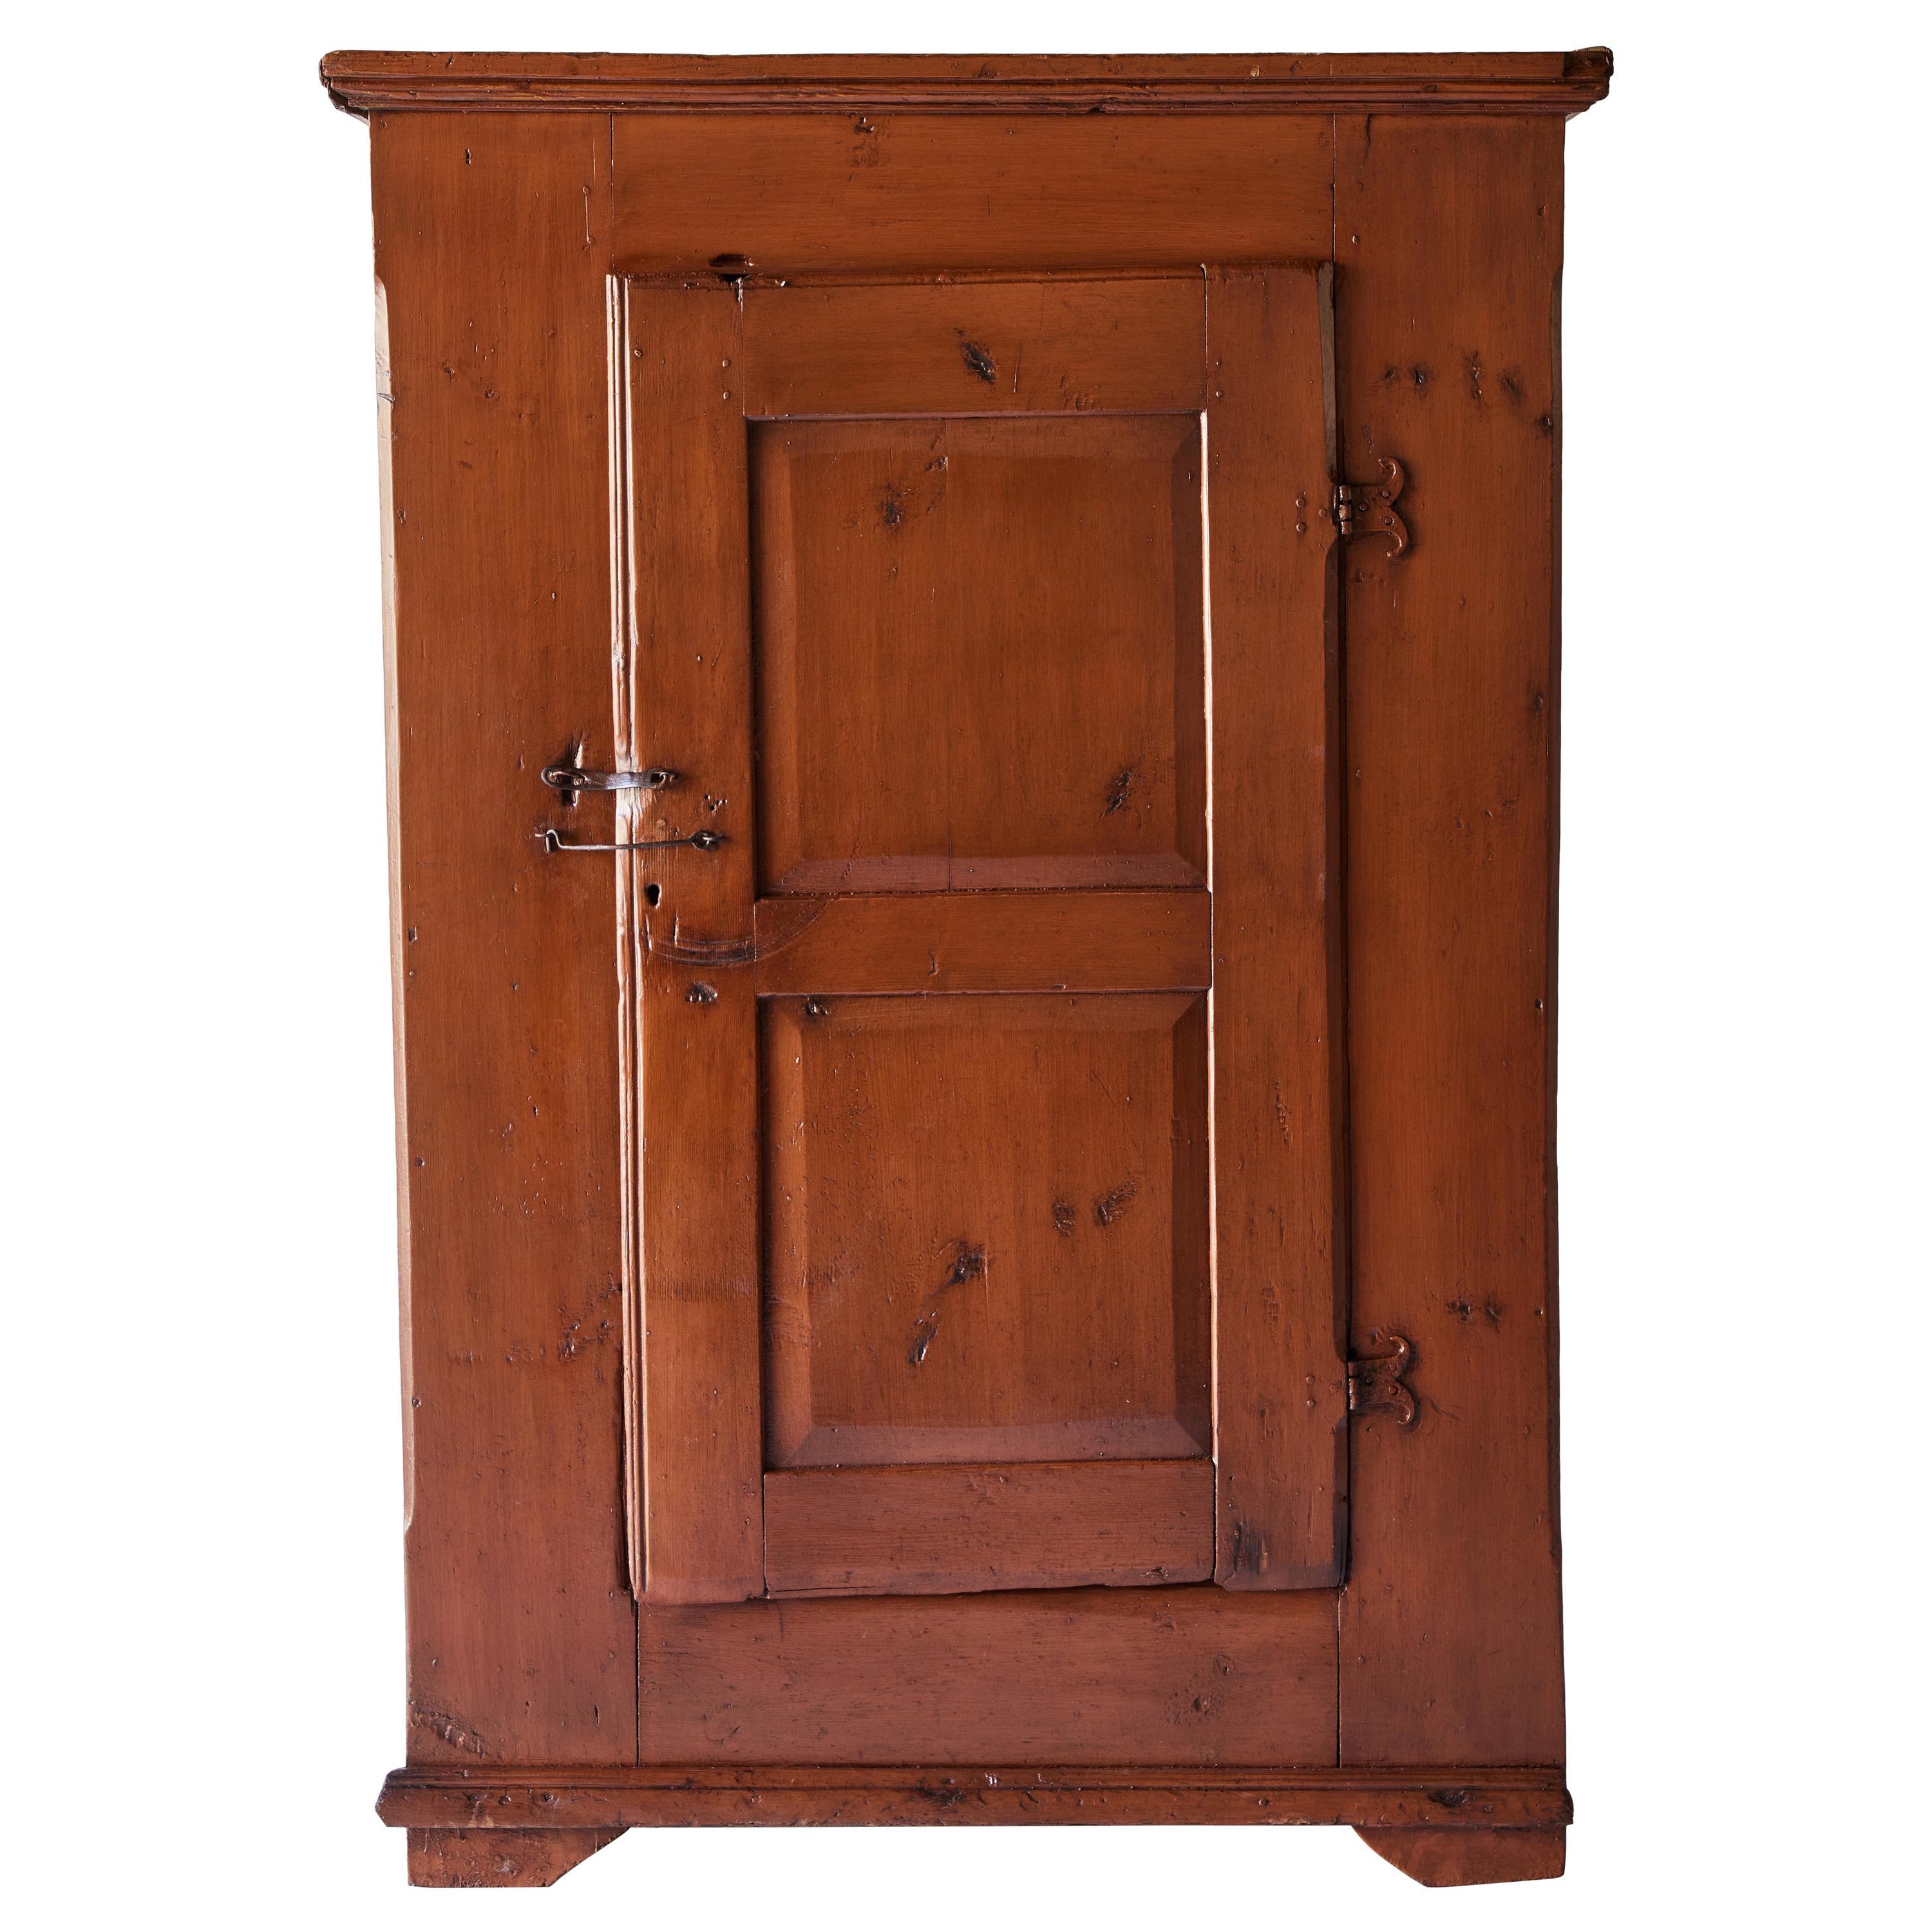 Early American Painted Single Door Cupboard